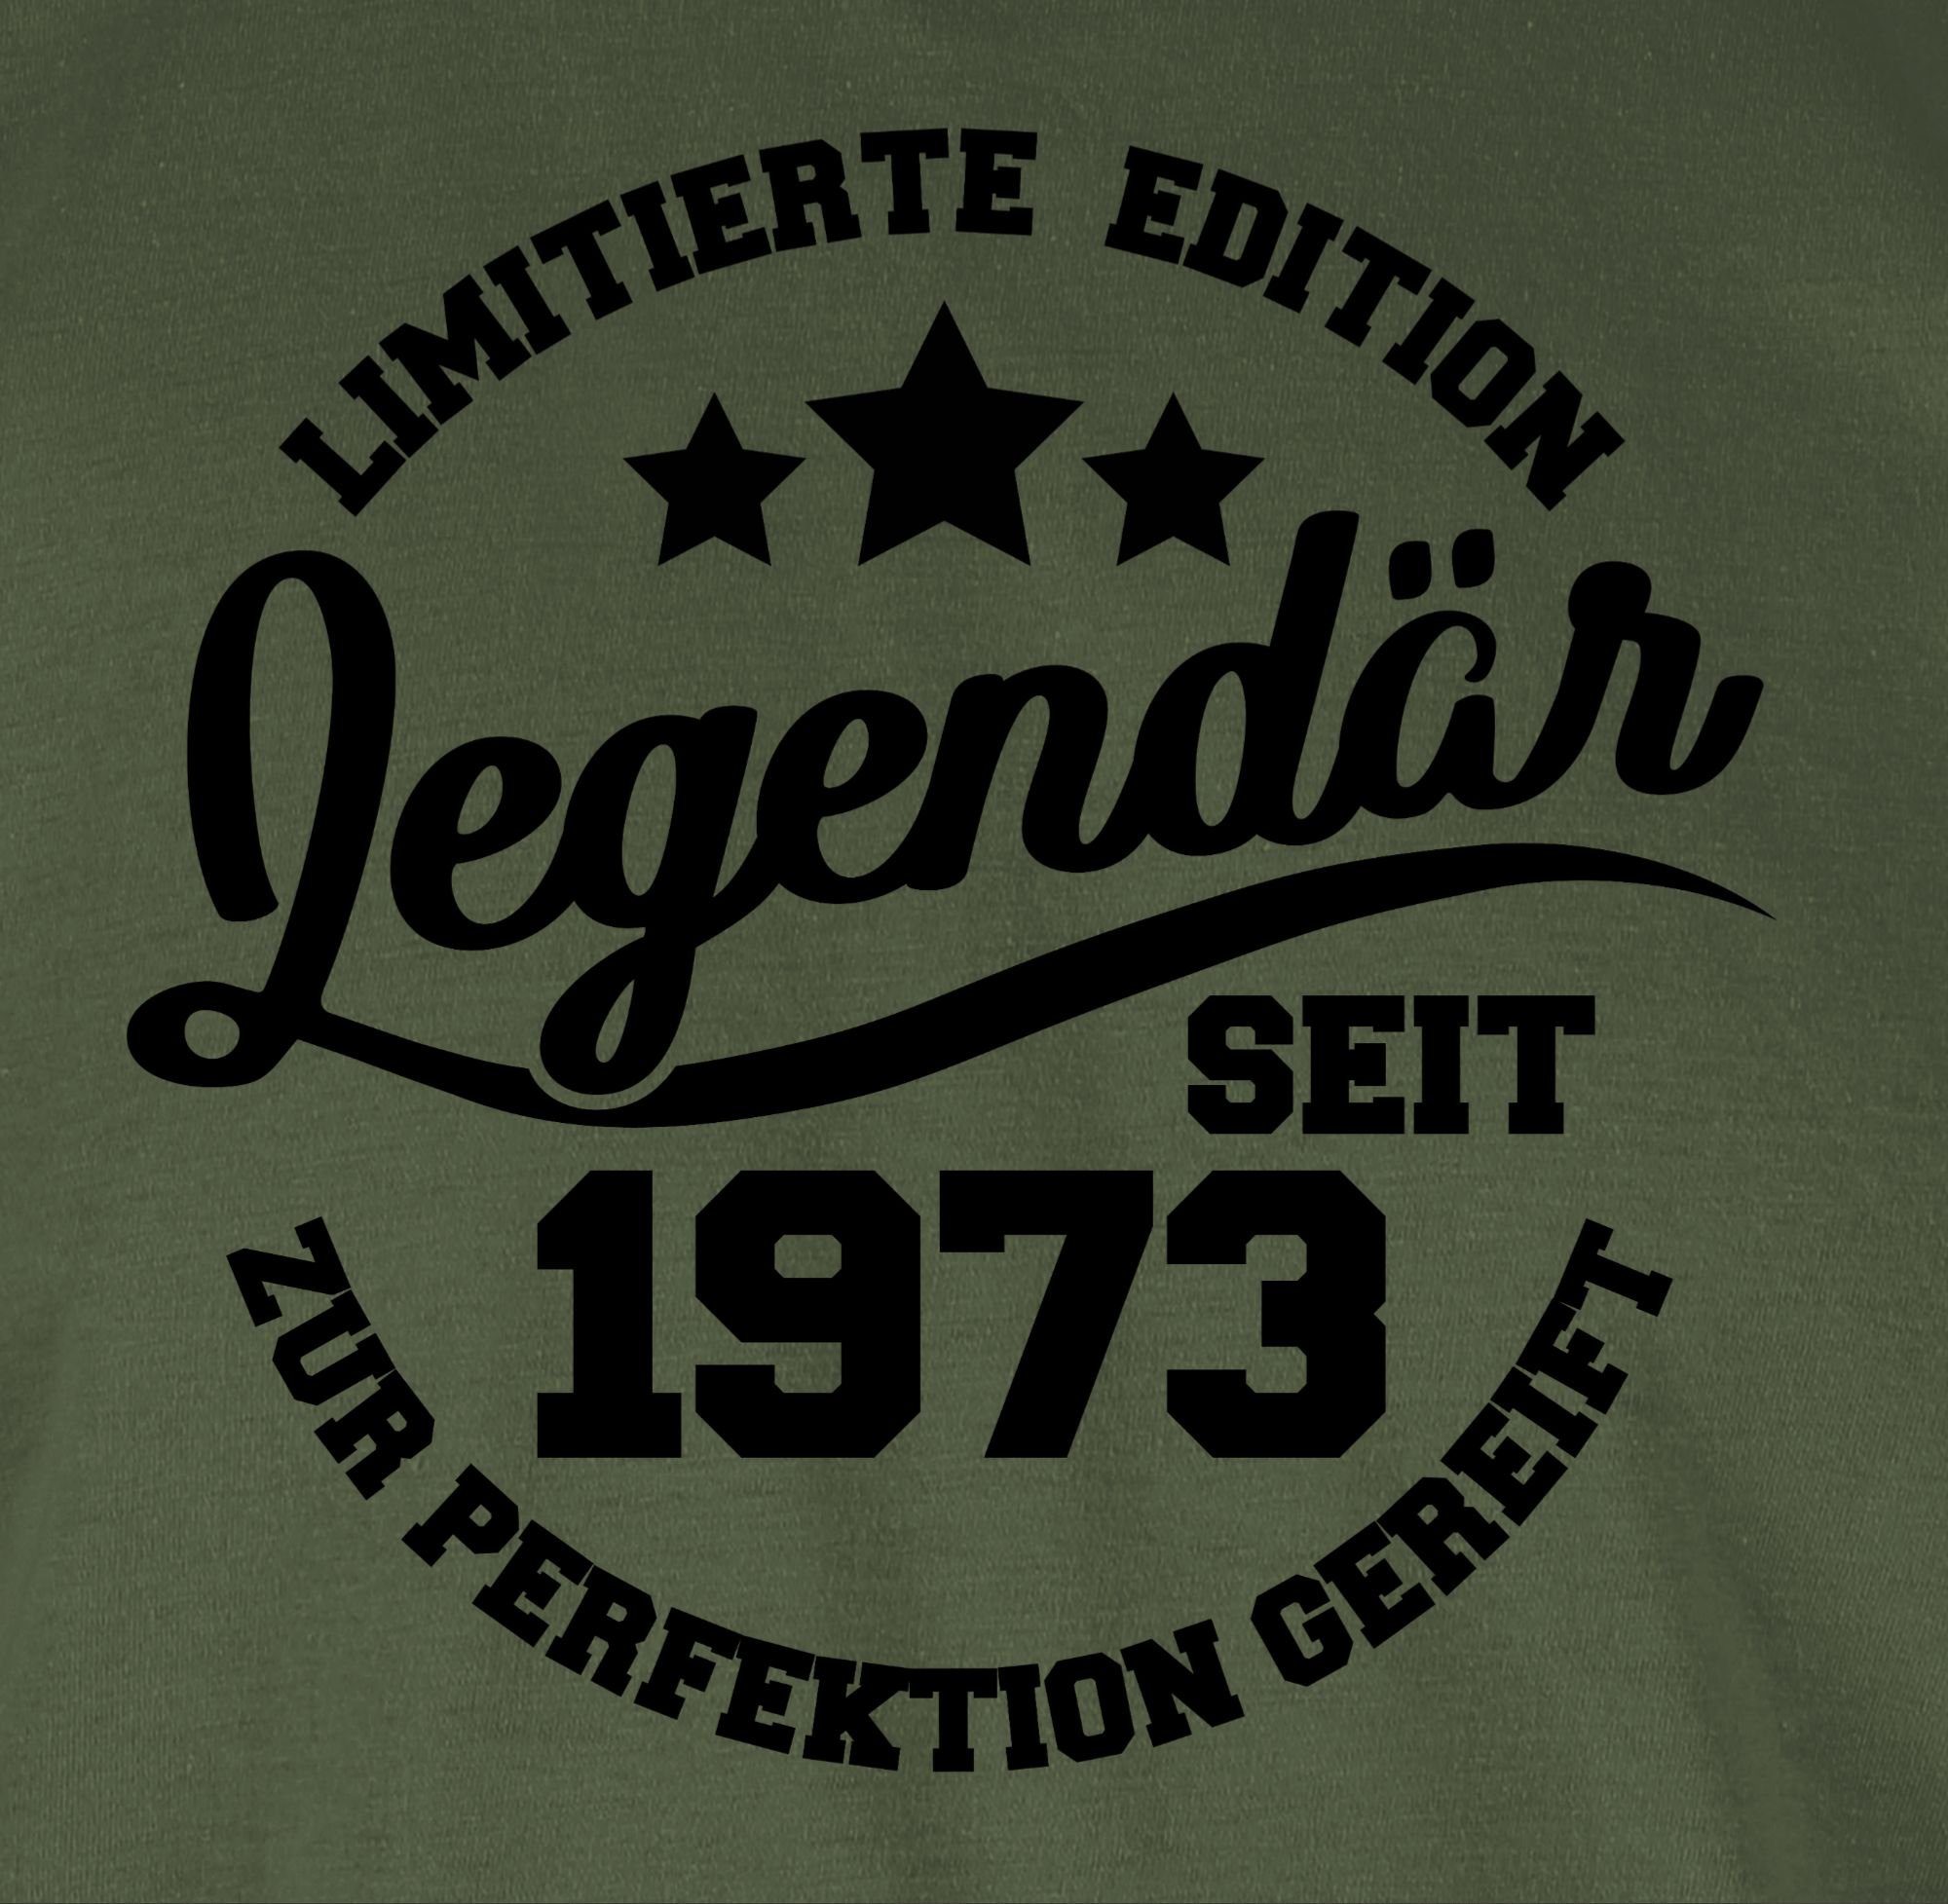 Grün Army T-Shirt 1973 Geburtstag seit 3 Legendär 50. Shirtracer